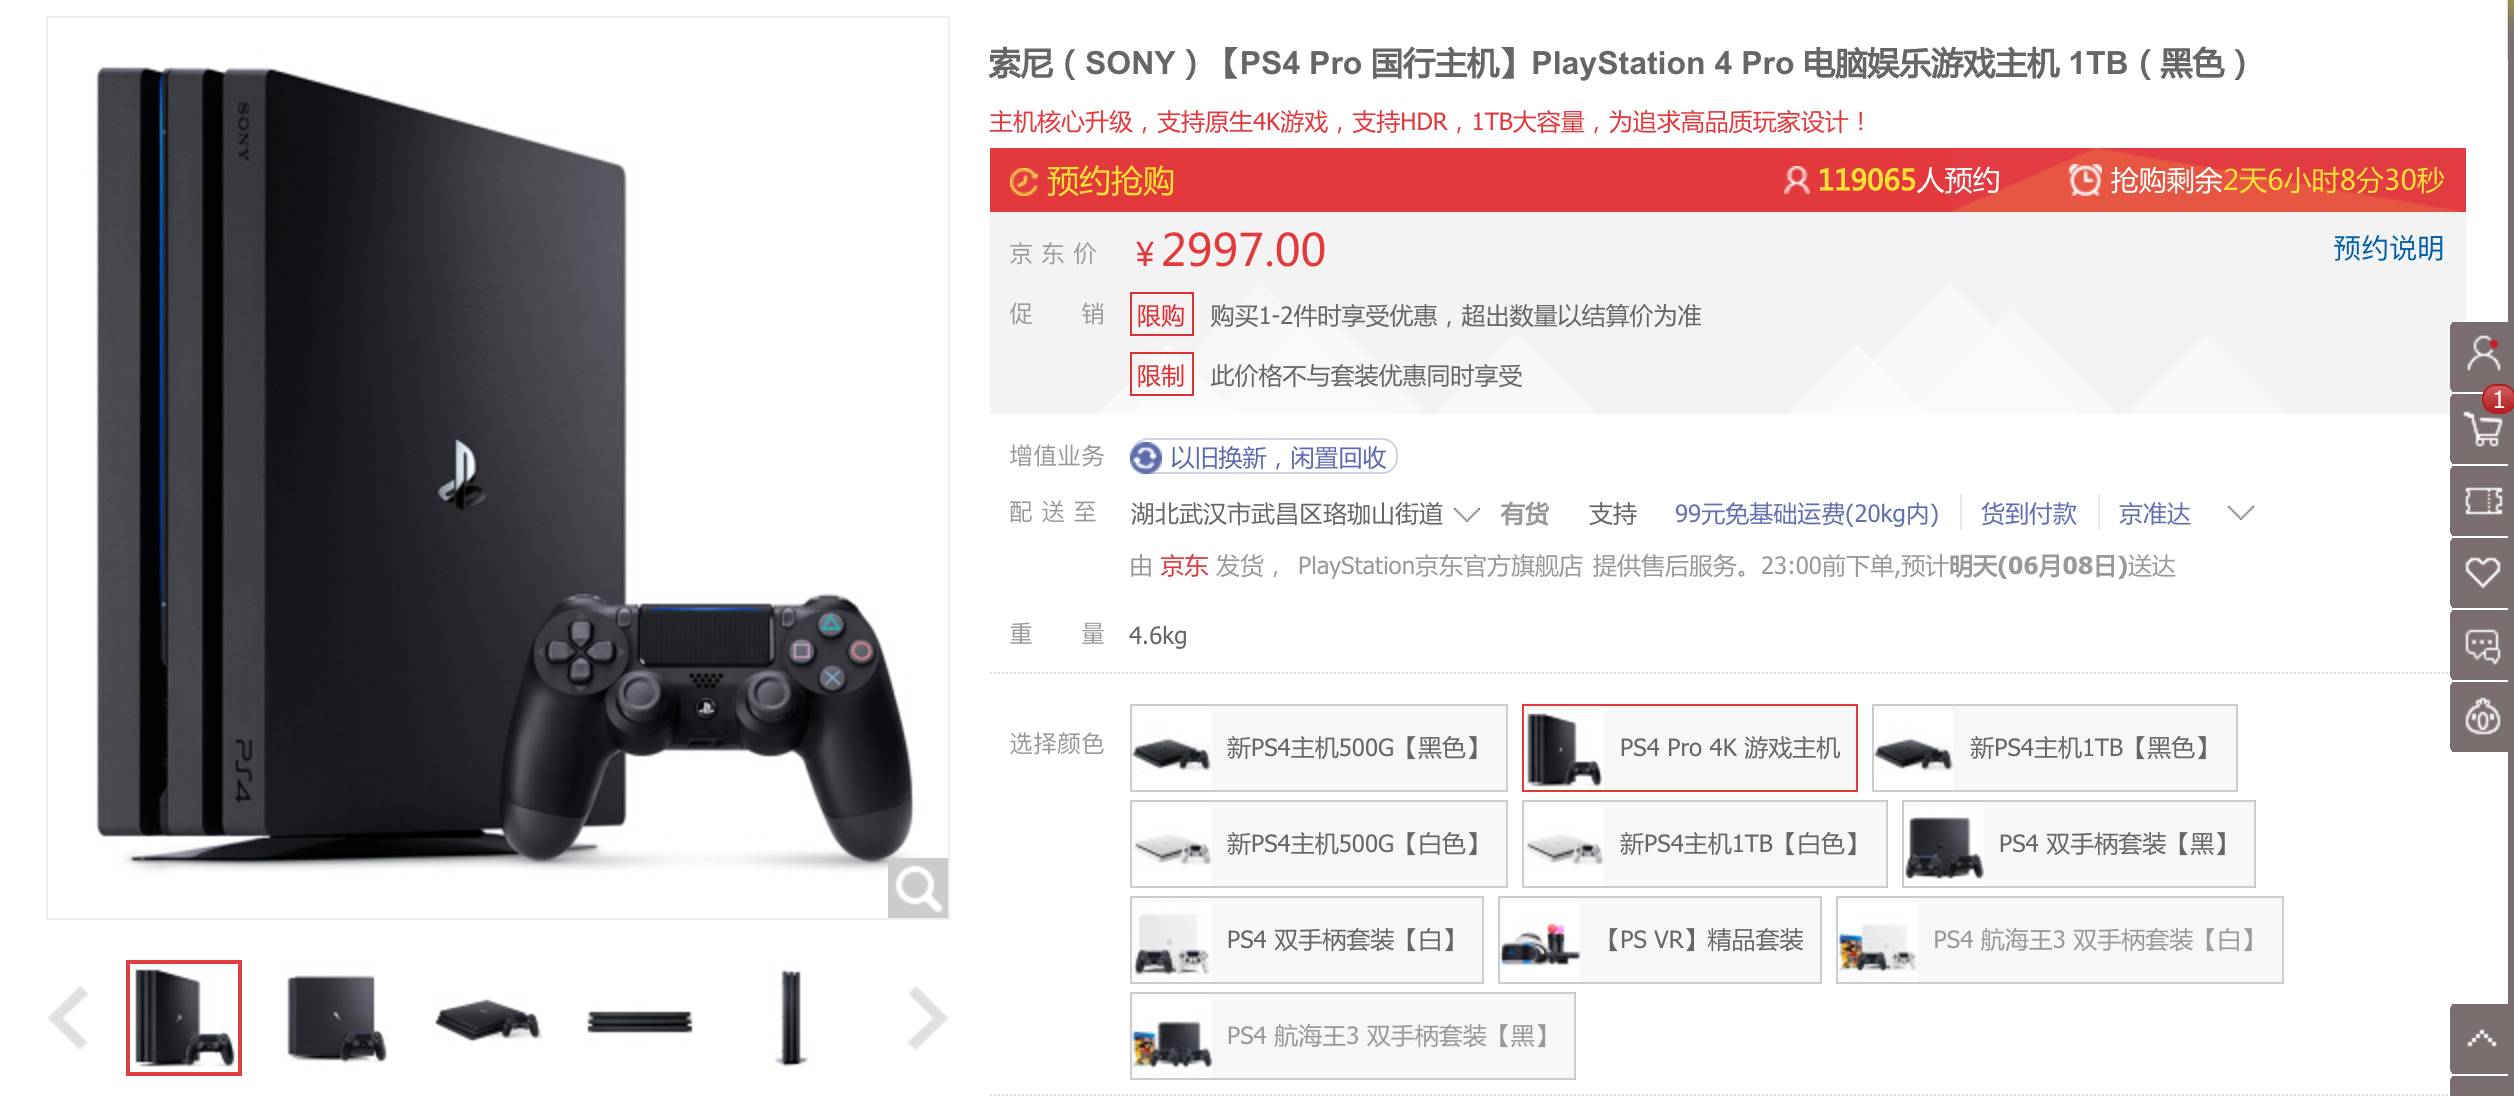 索尼ps4 Pro在中国开卖 京东预约超11万 科技美学微信公众号文章